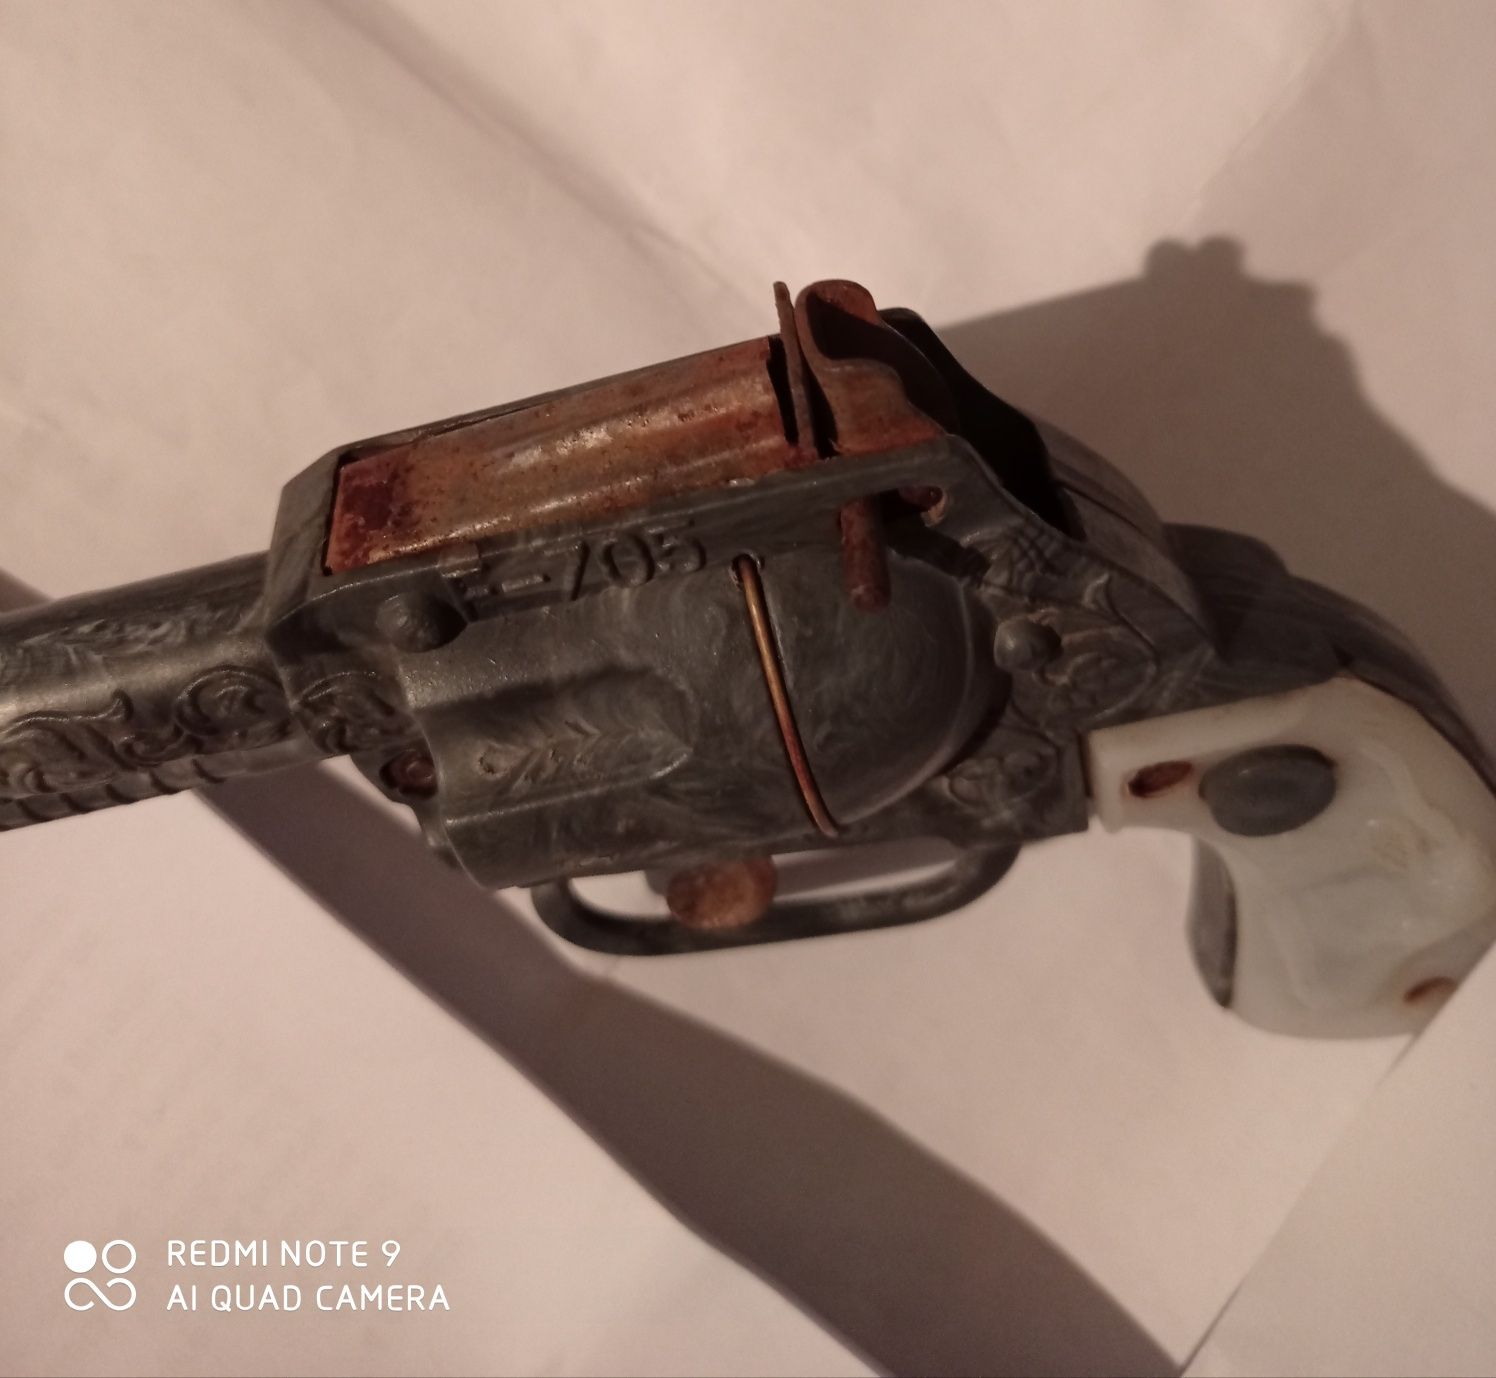 Vând sau schimb pistol/jucărie cu capse românesc,perioada comunismului